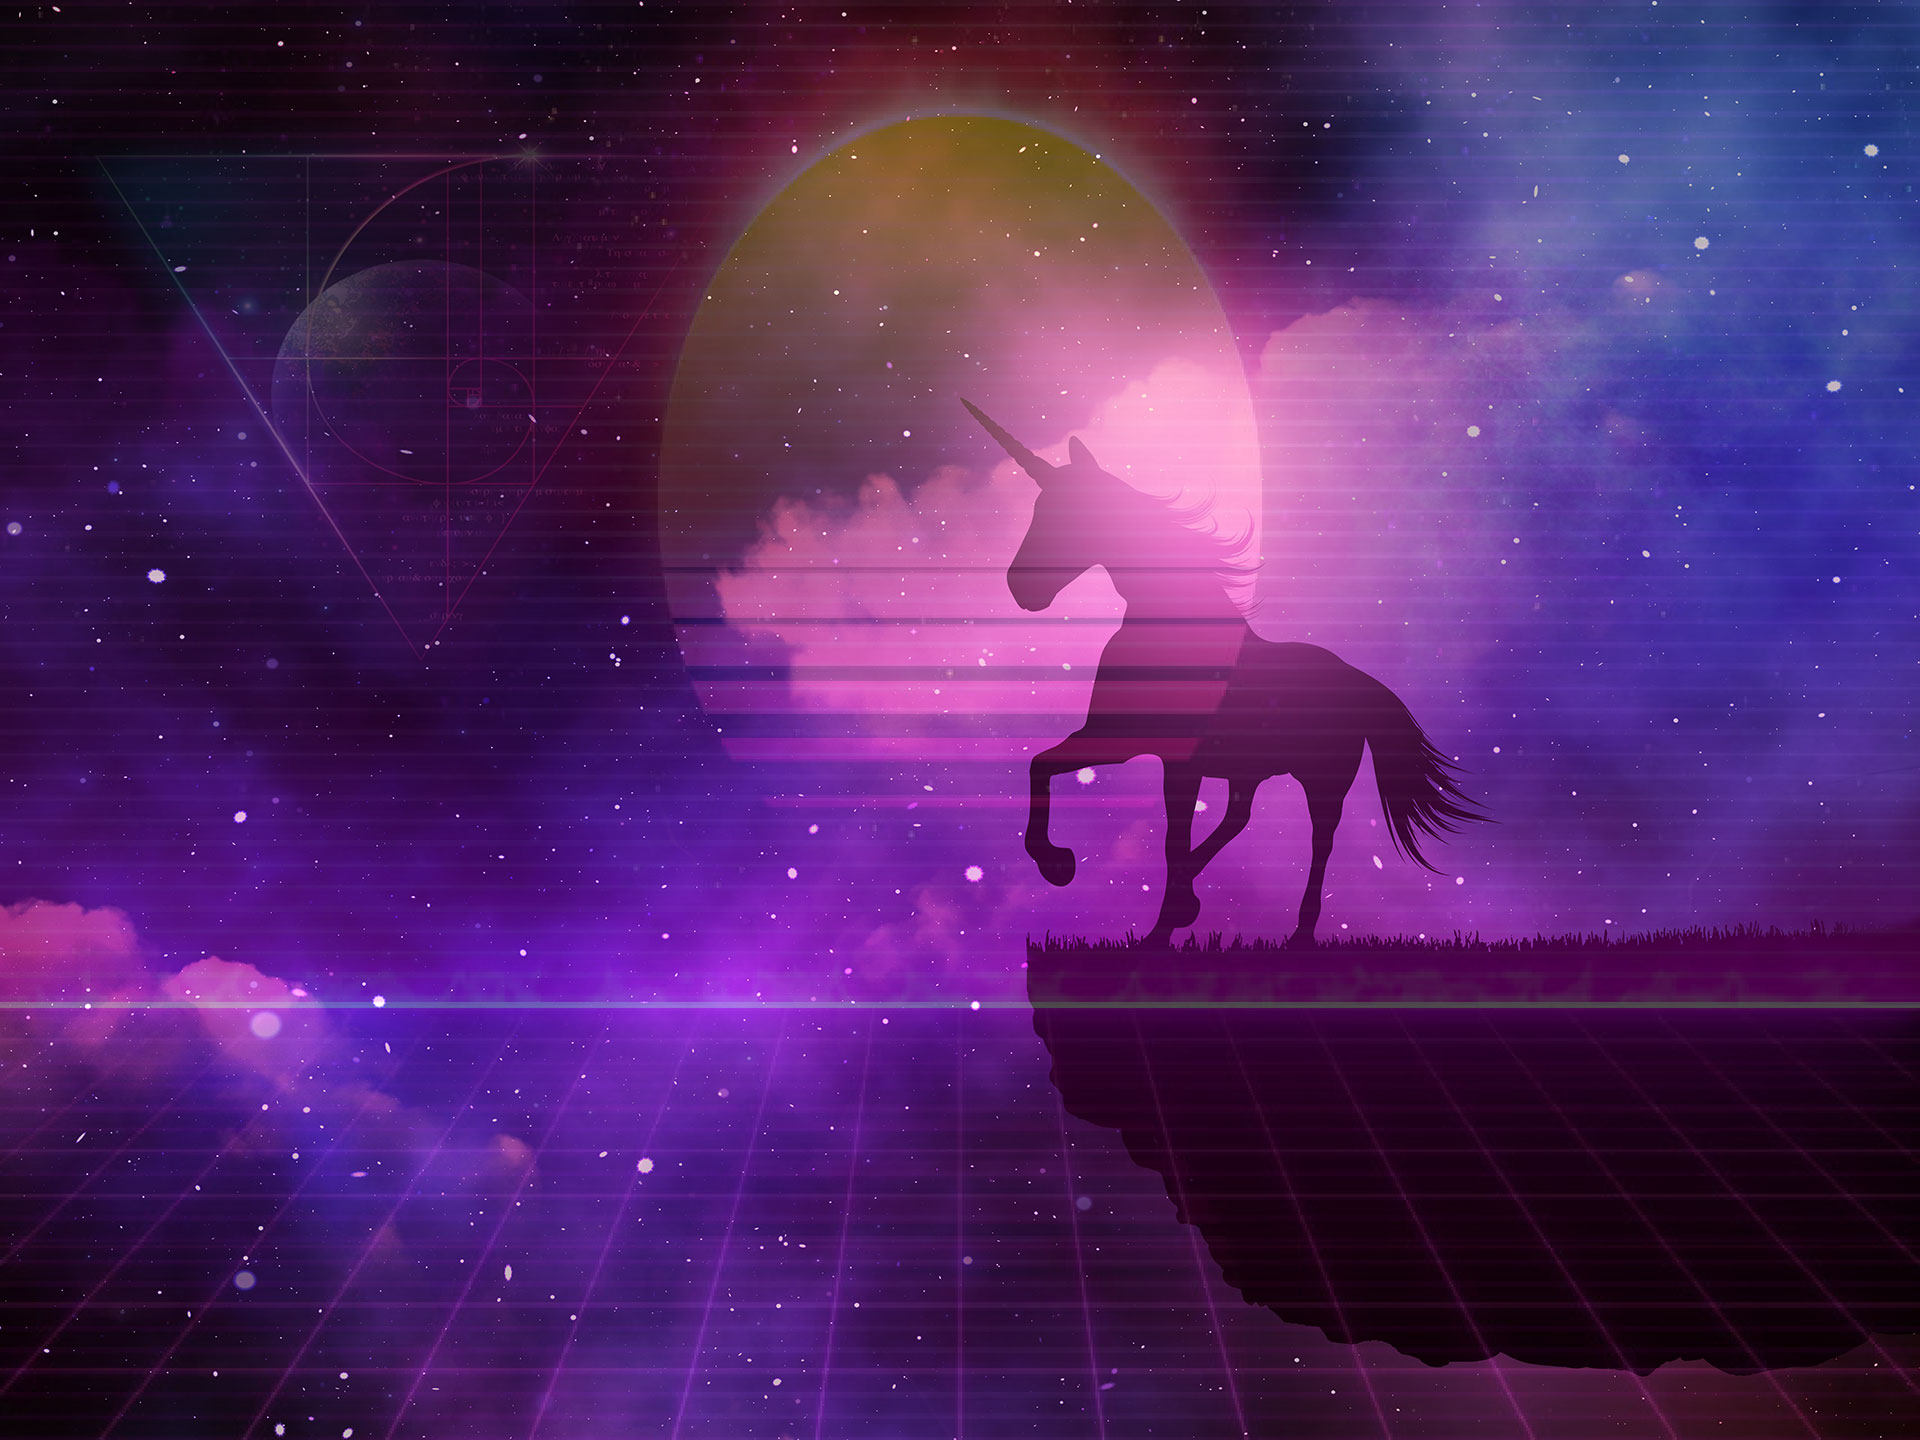 Galaxy unicorn image